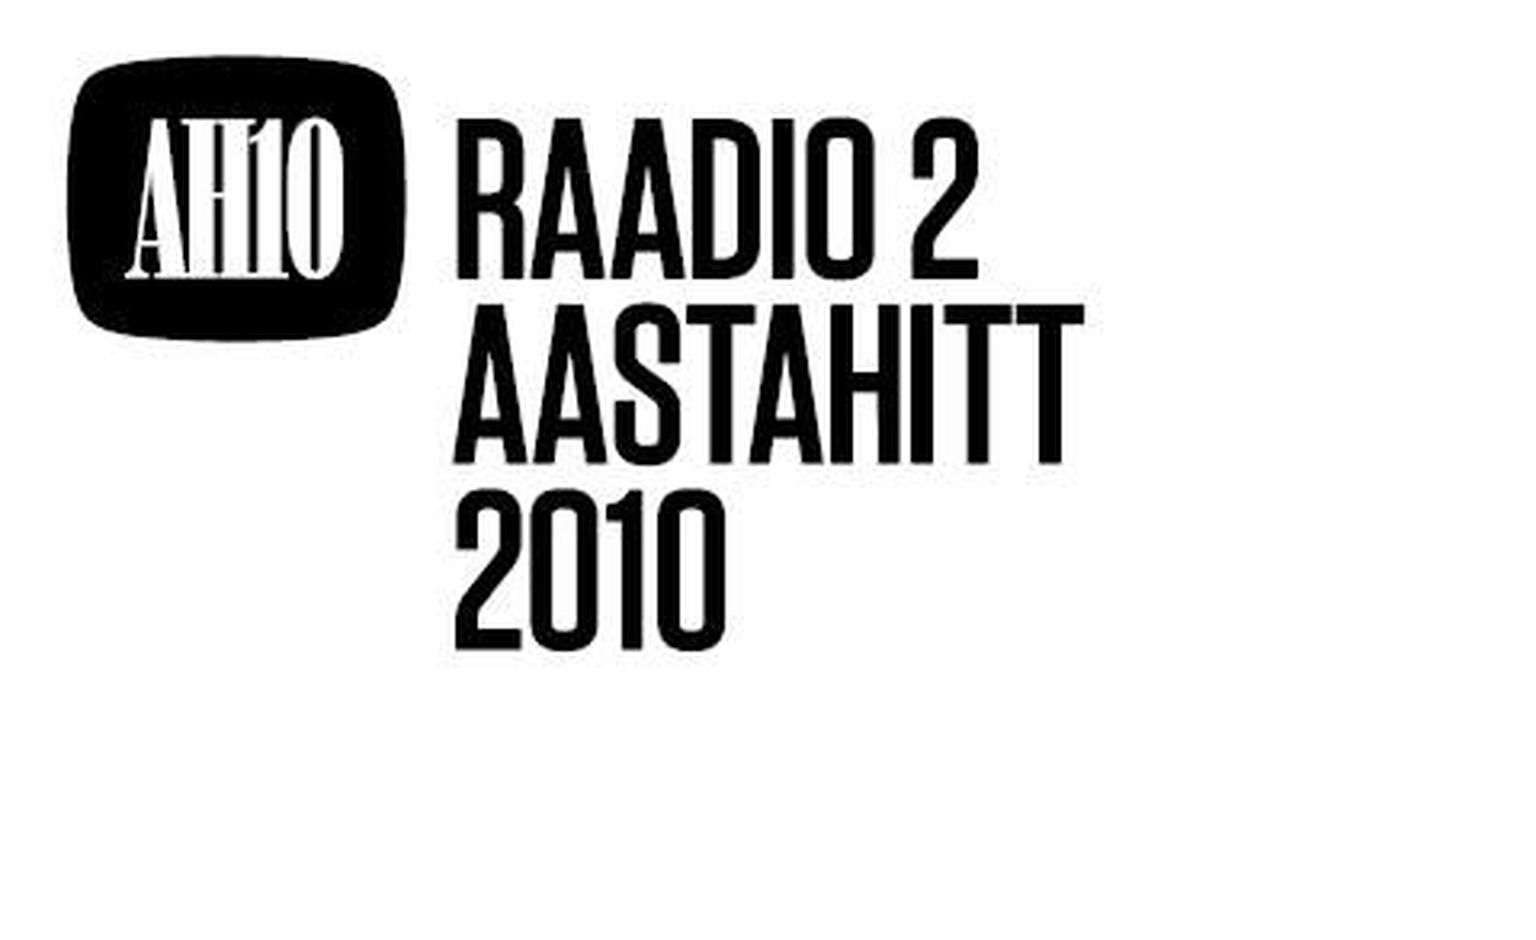 Aastahitt 2010 logo